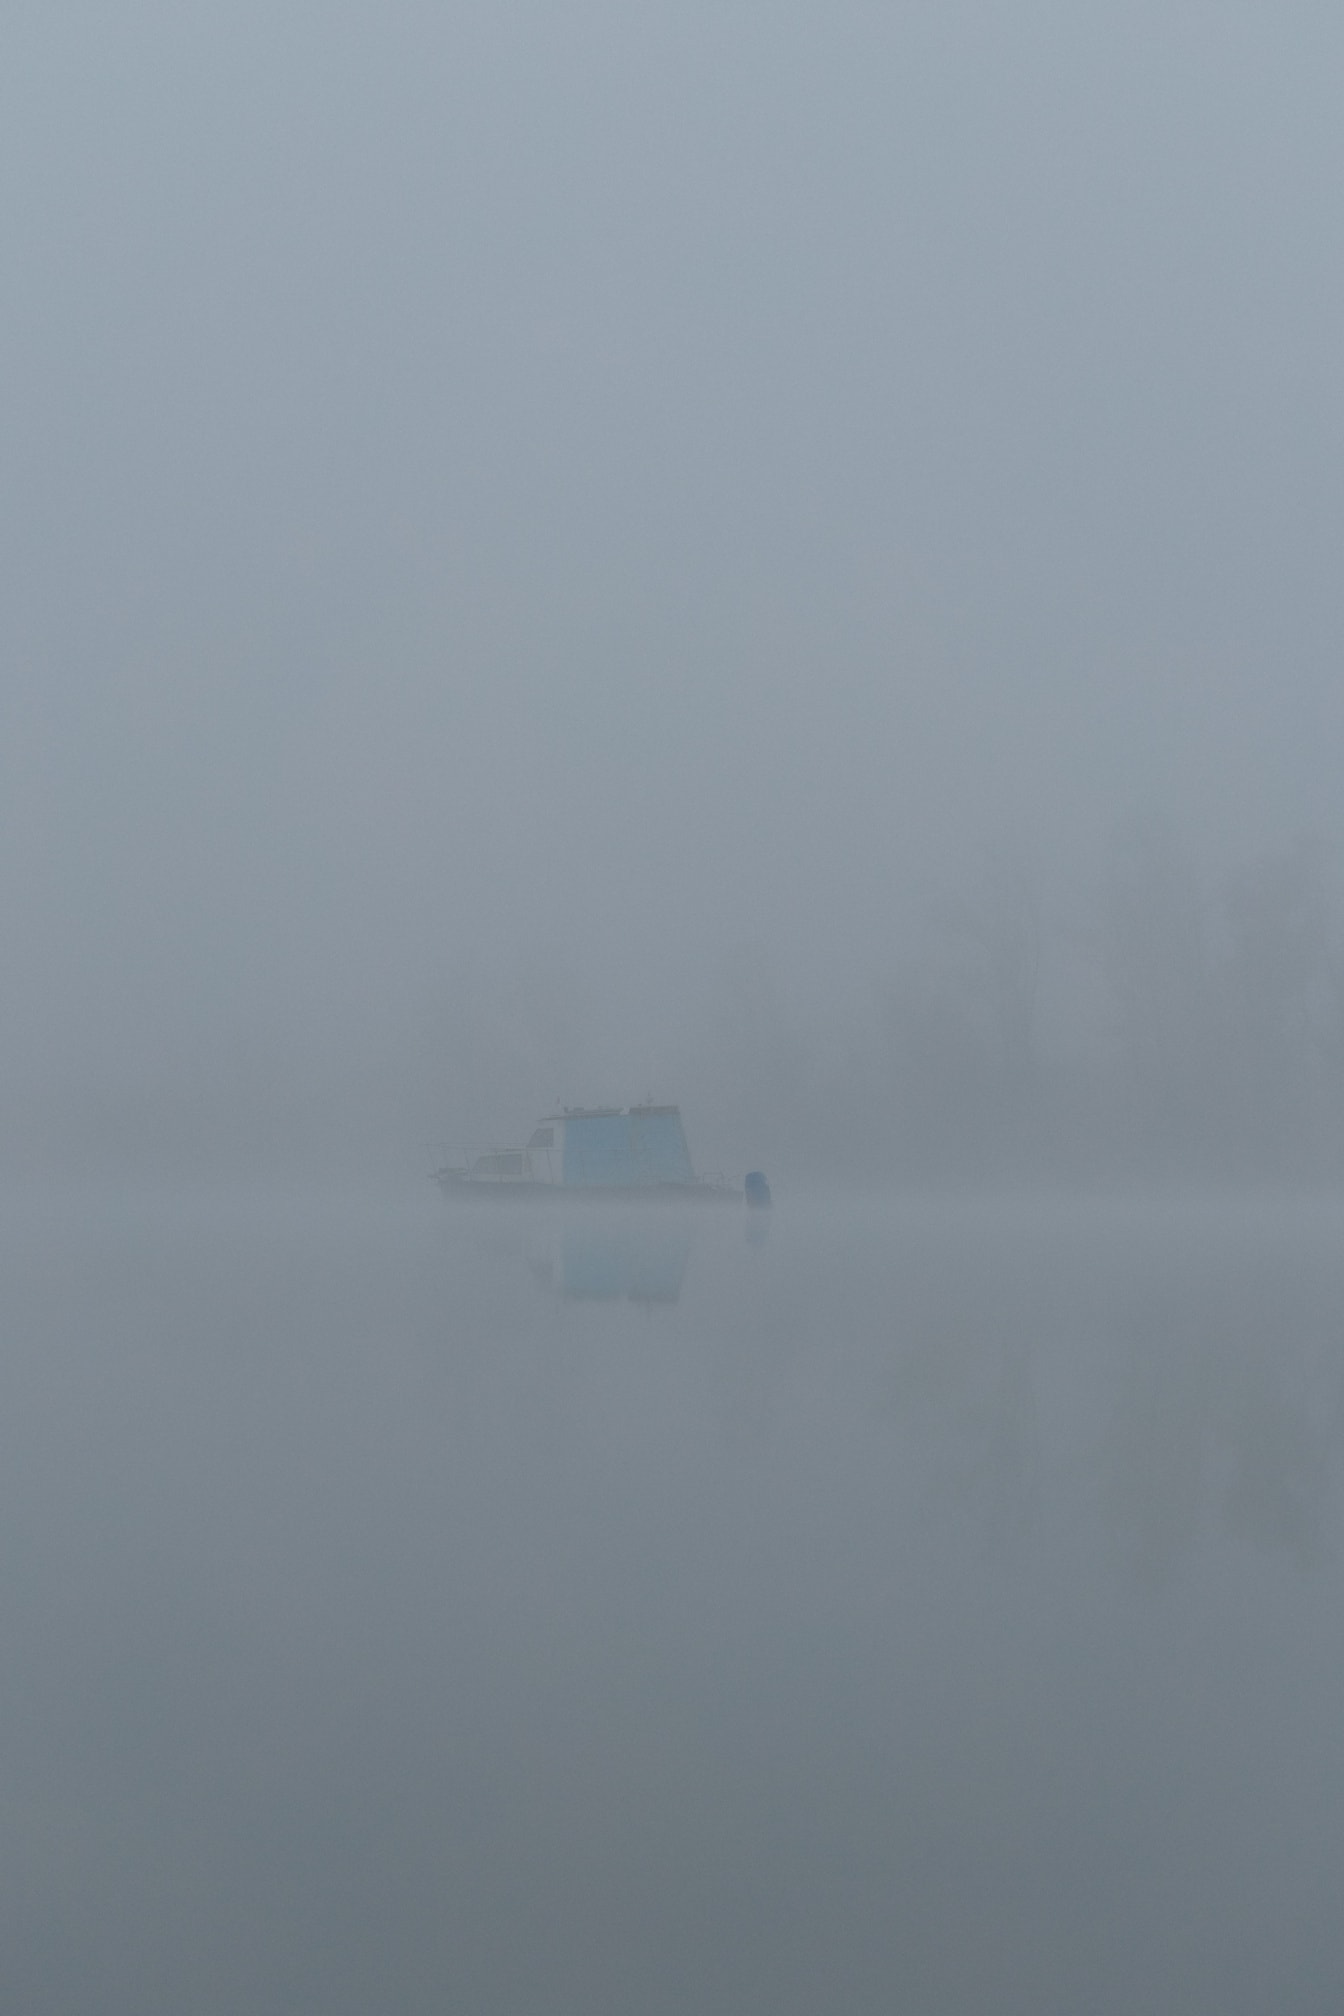 Bateau au loin sur le lac dans le brouillard dense